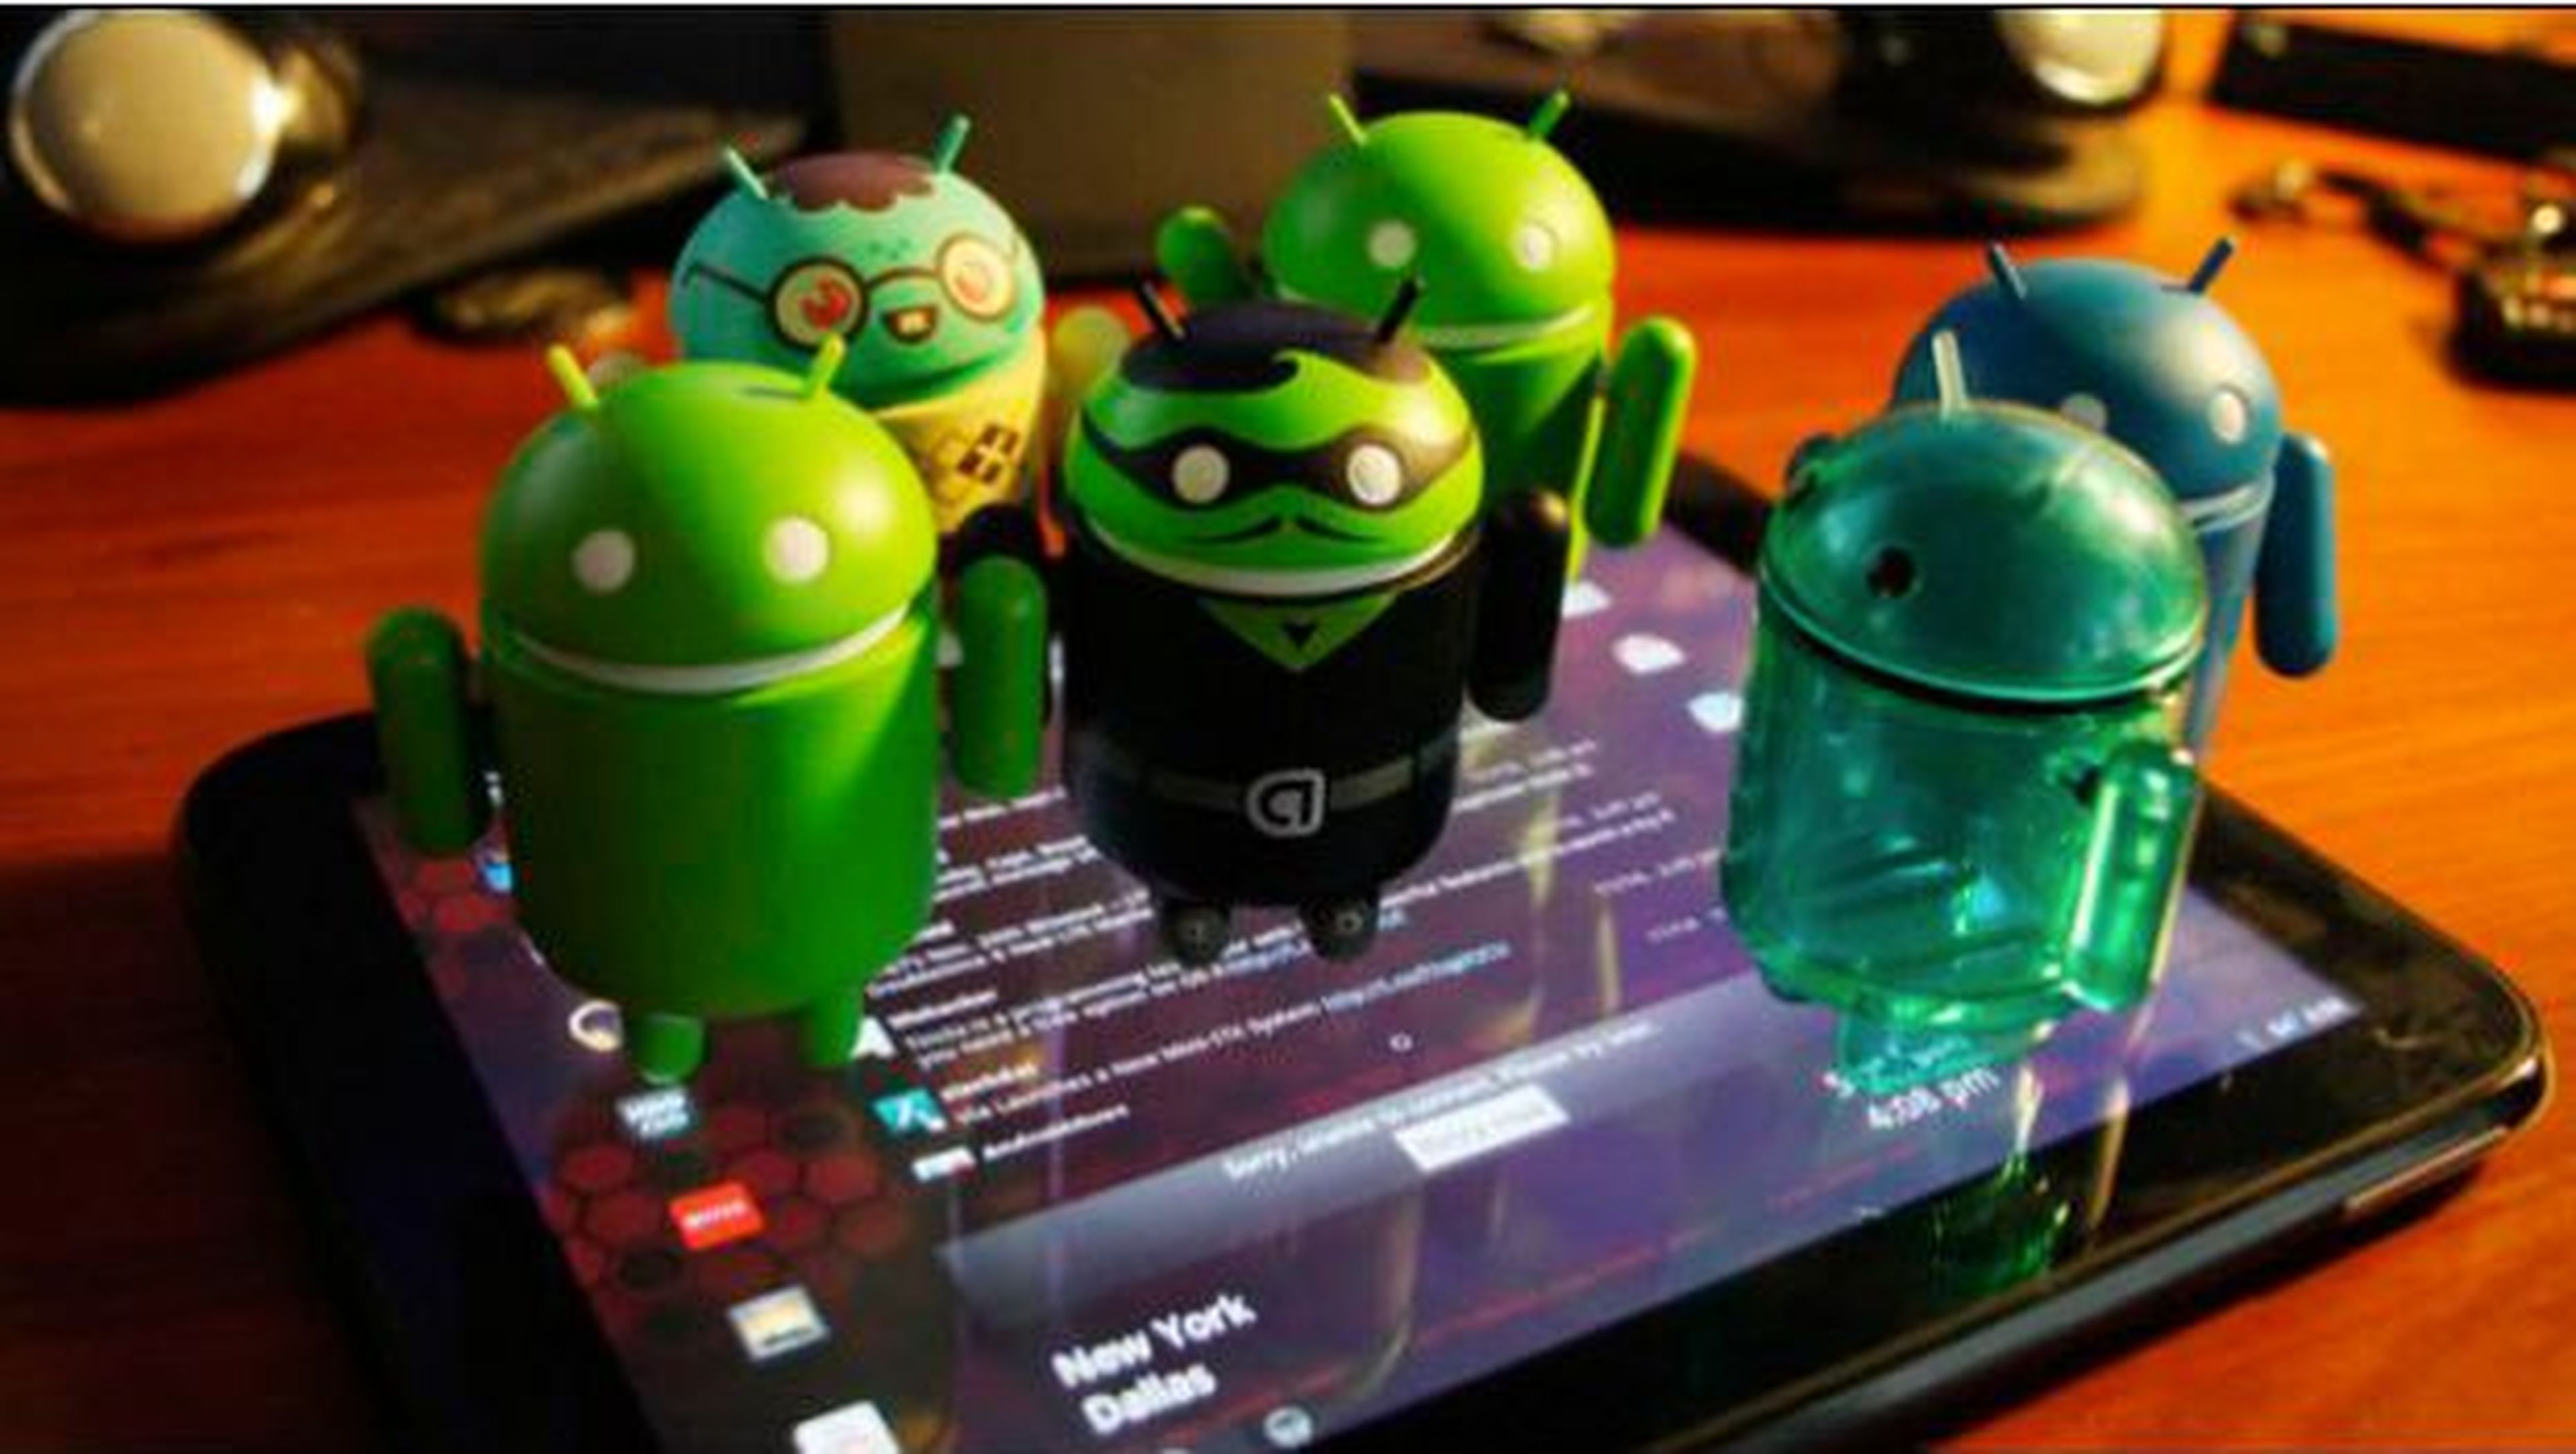 Dispositivos con más de 6 años en el mercado todavía se mantienen actualizadas con Android 6.0 Marshmallow